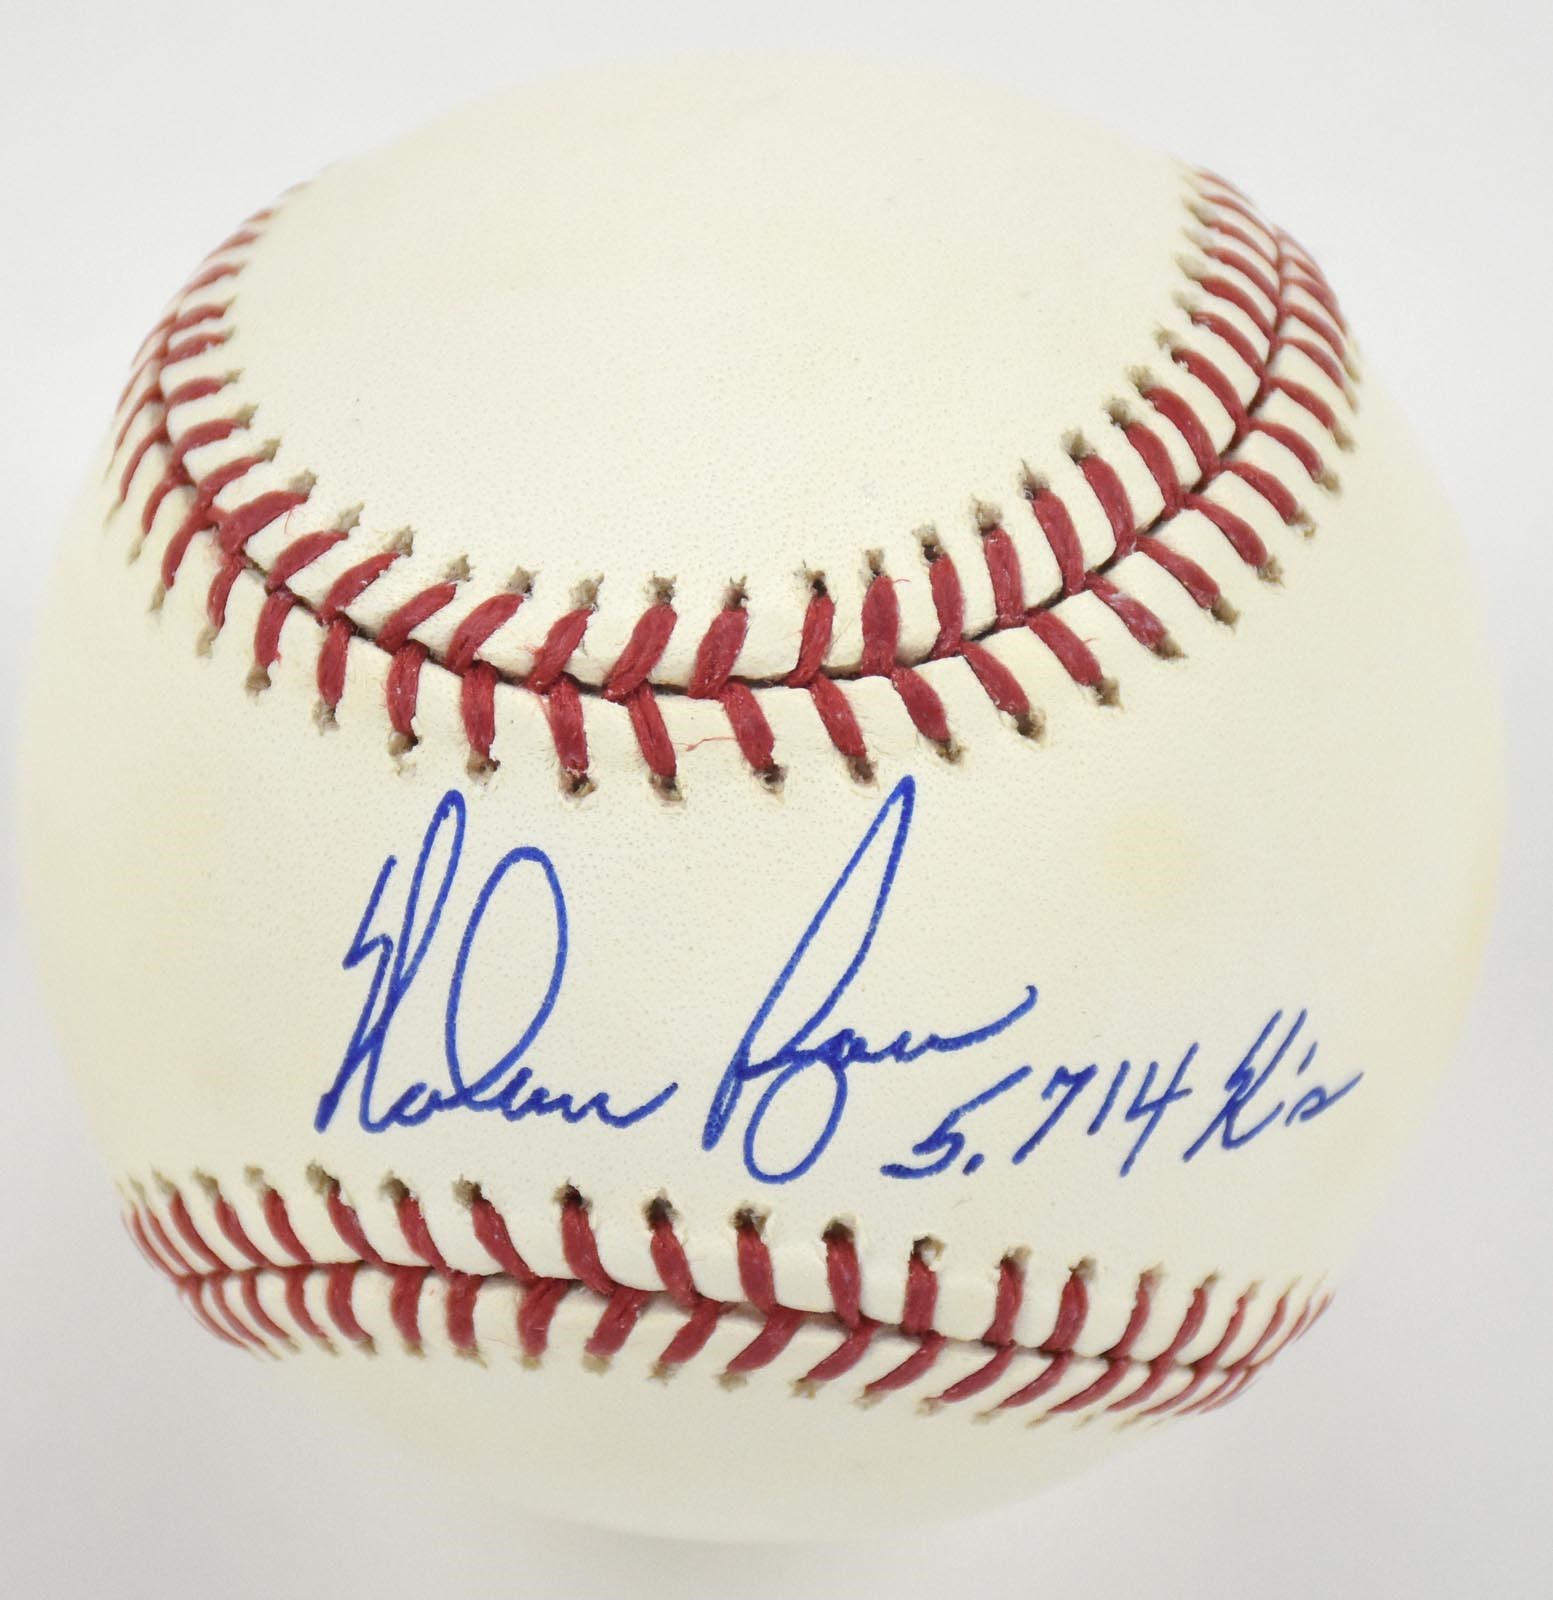 Baseball Autographs - Nolan Ryan "5714 K's" Single Signed Baseball (Steiner)